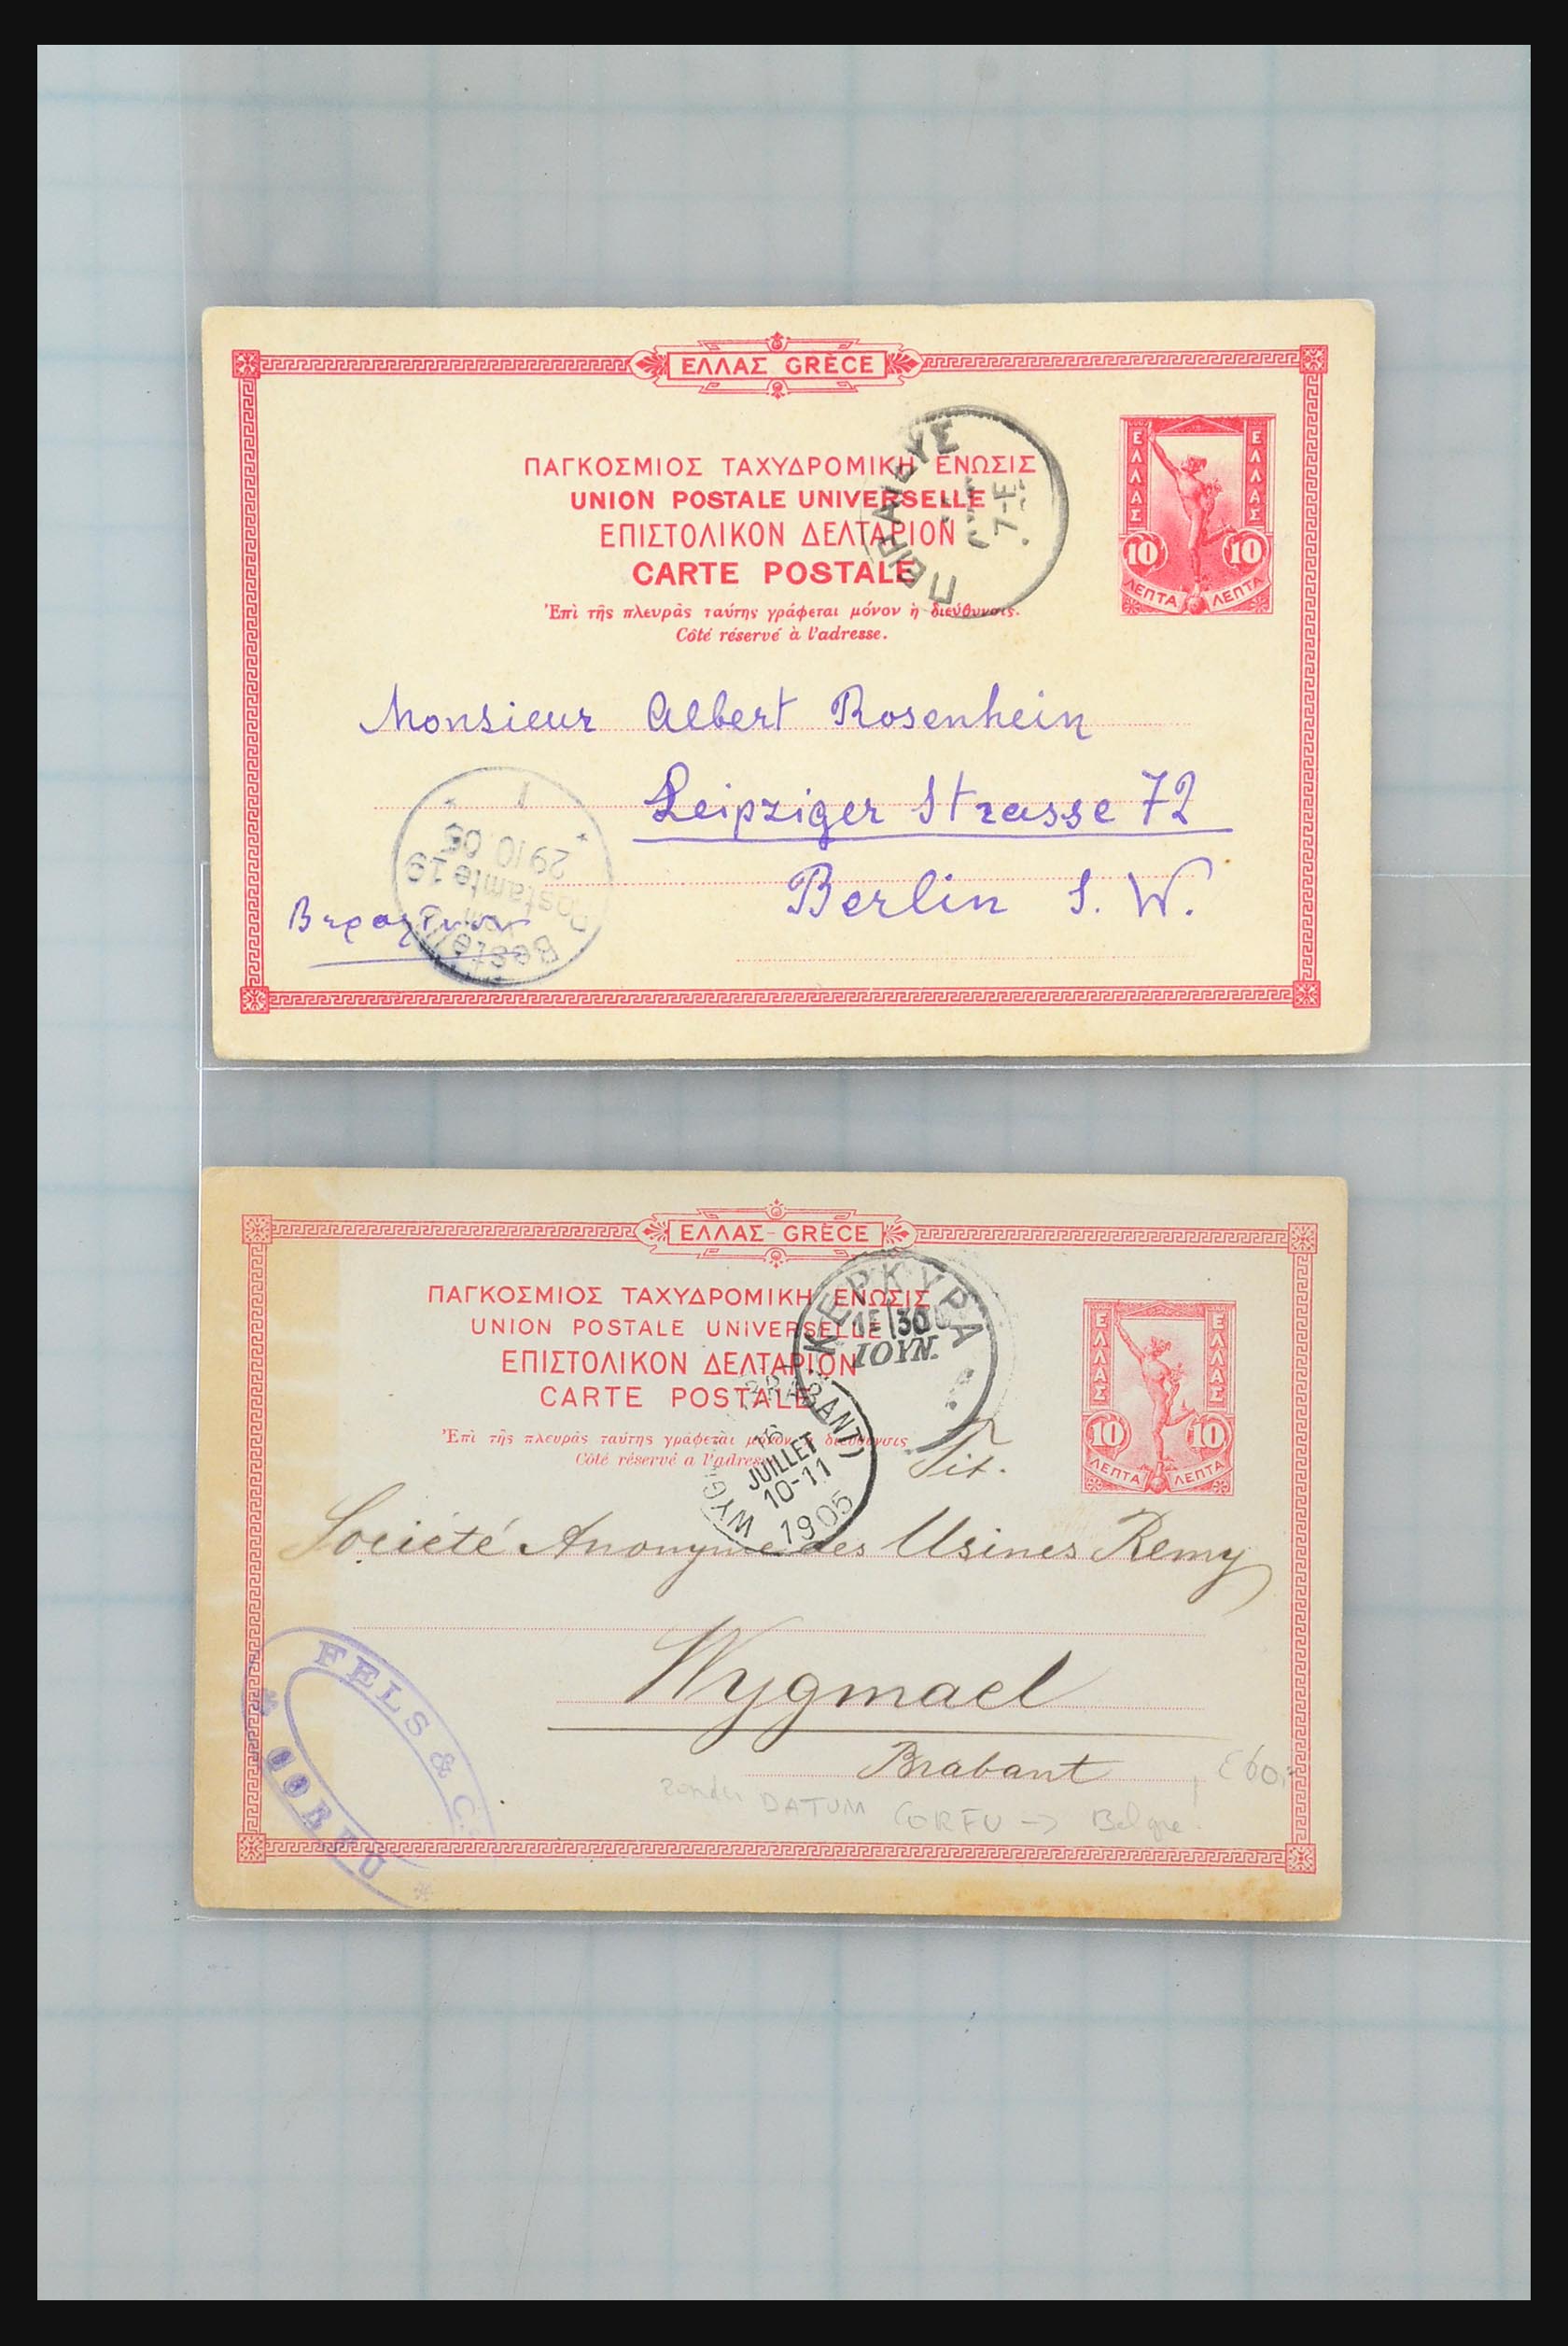 31358 025 - 31358 Portugal/Luxemburg/Griekenland brieven 1880-1960.